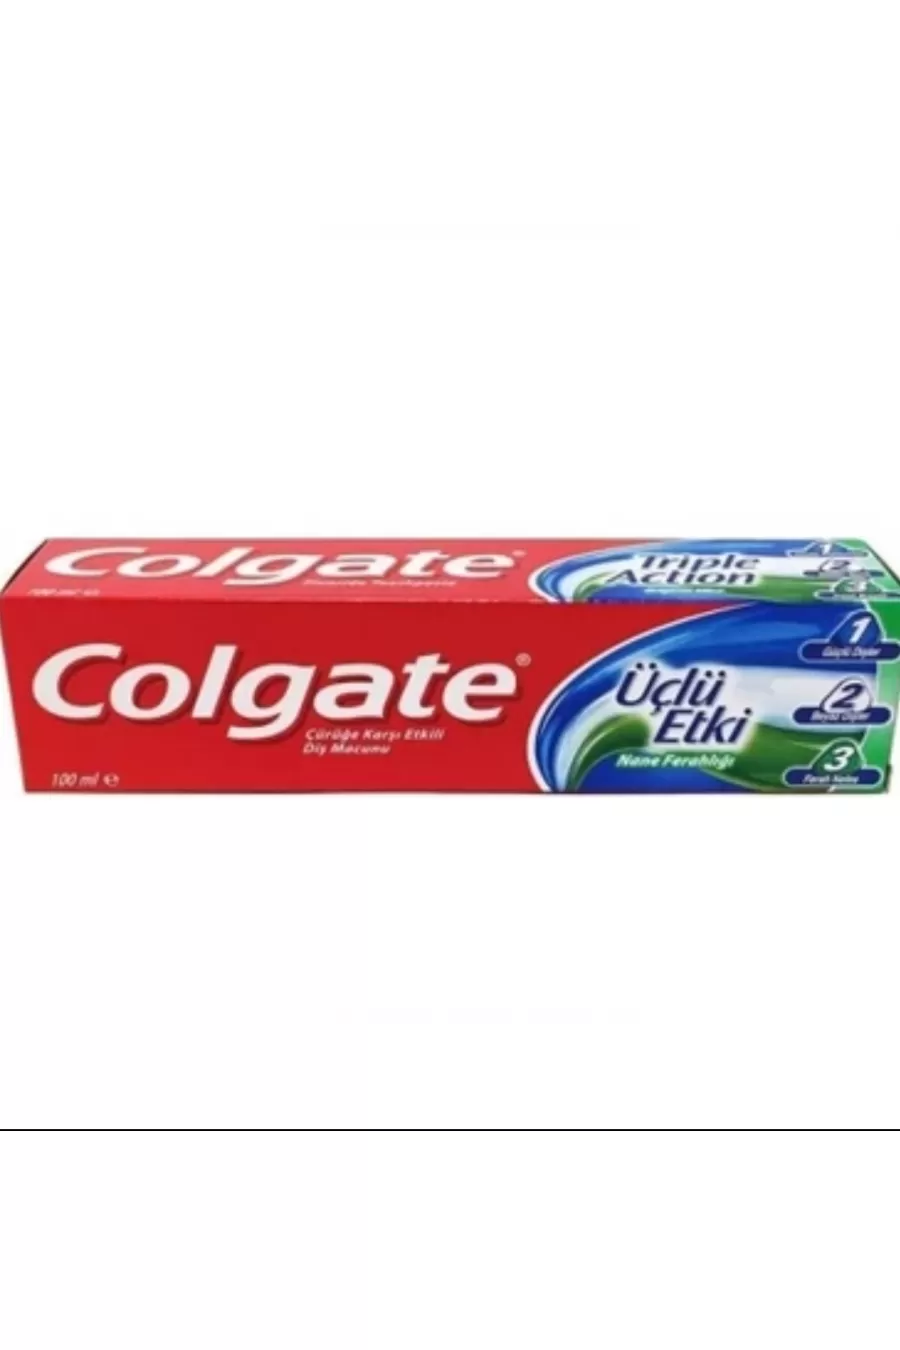 تقویت کننده و سفید کننده و با طراوت کننده بزرگ و خانواده کلگیت Colgate خمیر دندان ۳ کاره